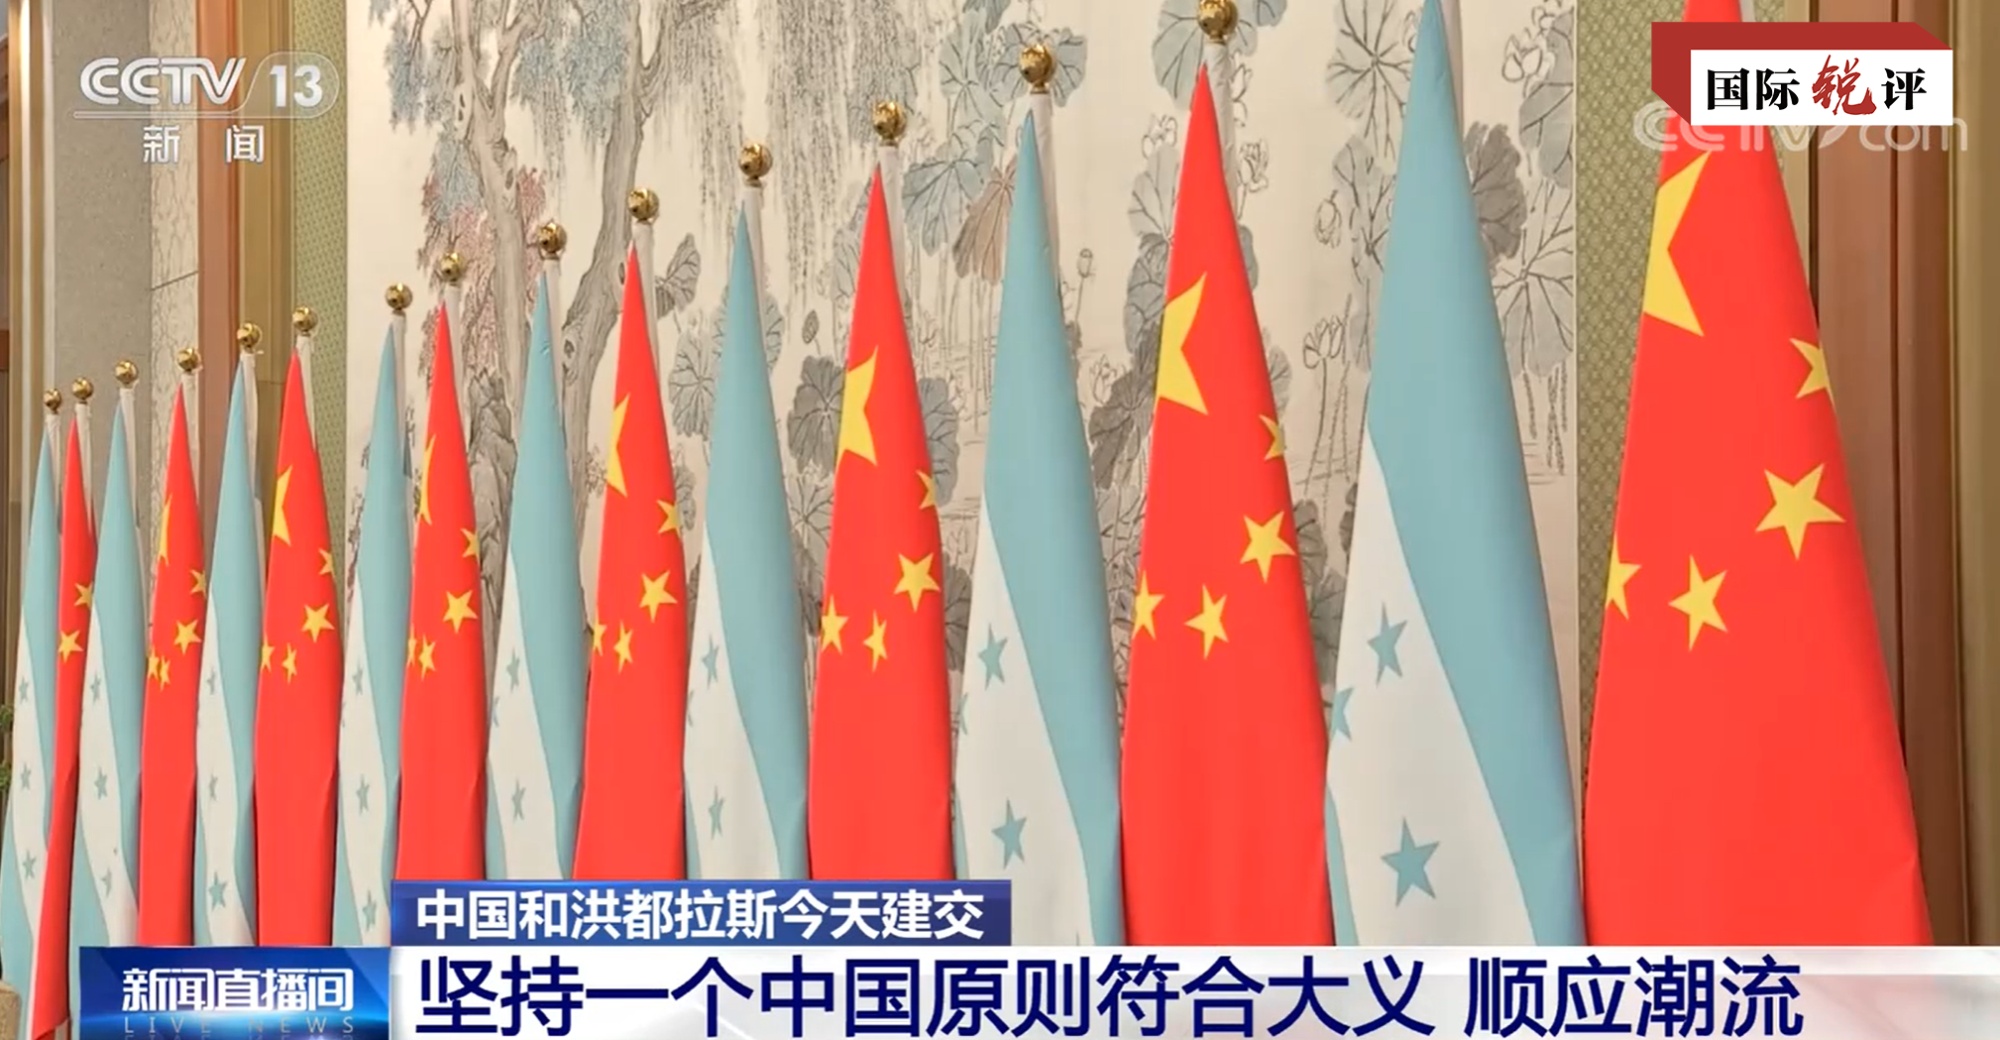 برقراری روابط دیپلماتیک بین چین و هندرواس، نمایانگر پایبندی به اصل چین واحد به عنوان مصداق عدالت بین المللی